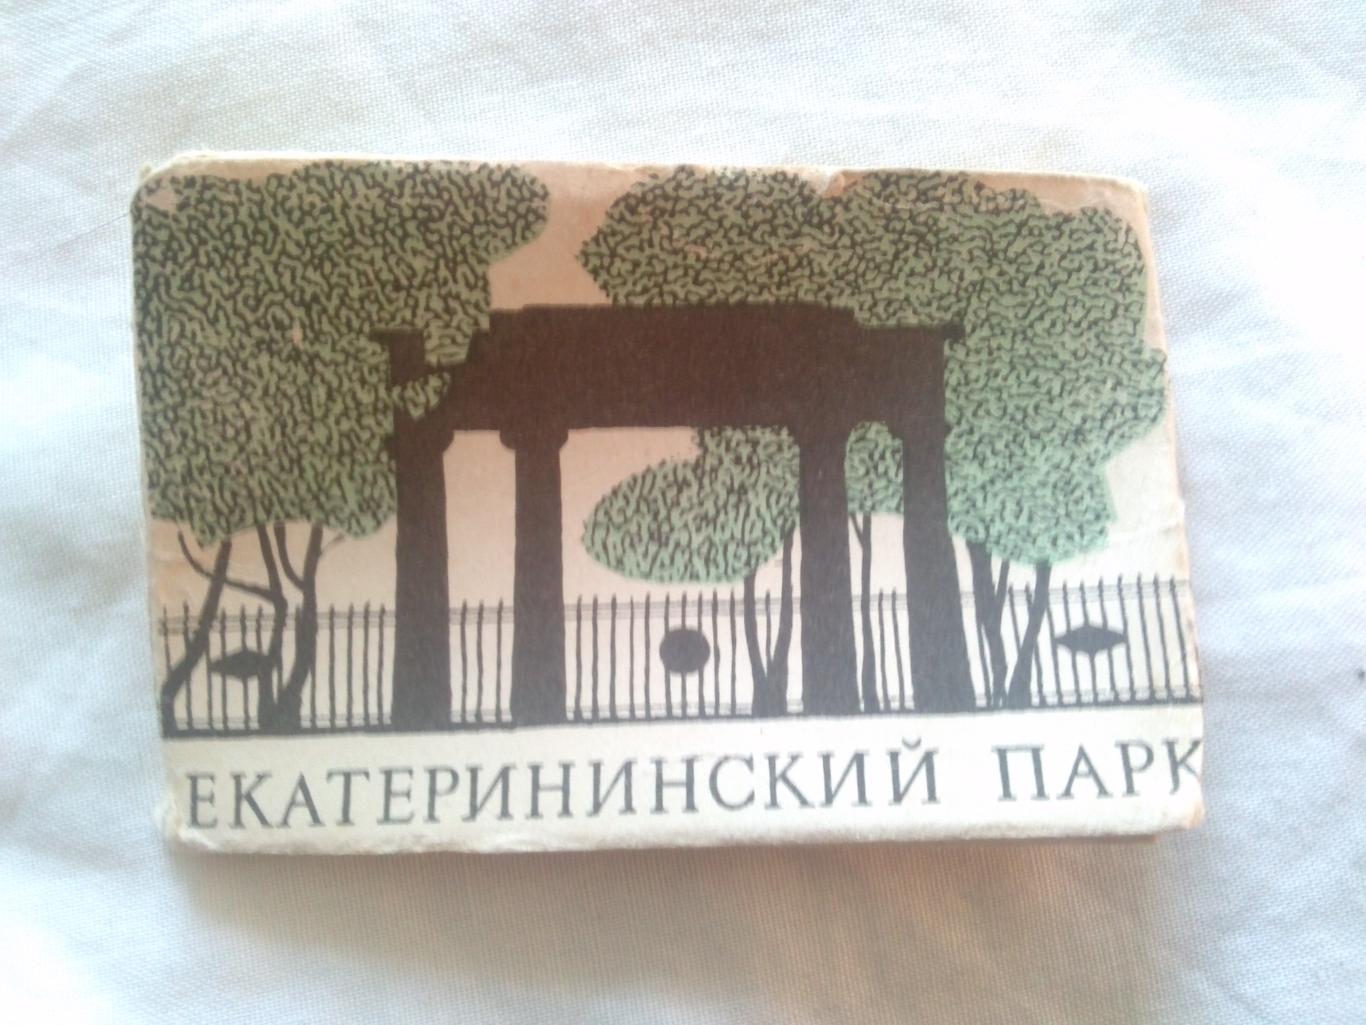 Екатерининский парк 1969 г. полный набор - 16 открыток ( Ленинград )